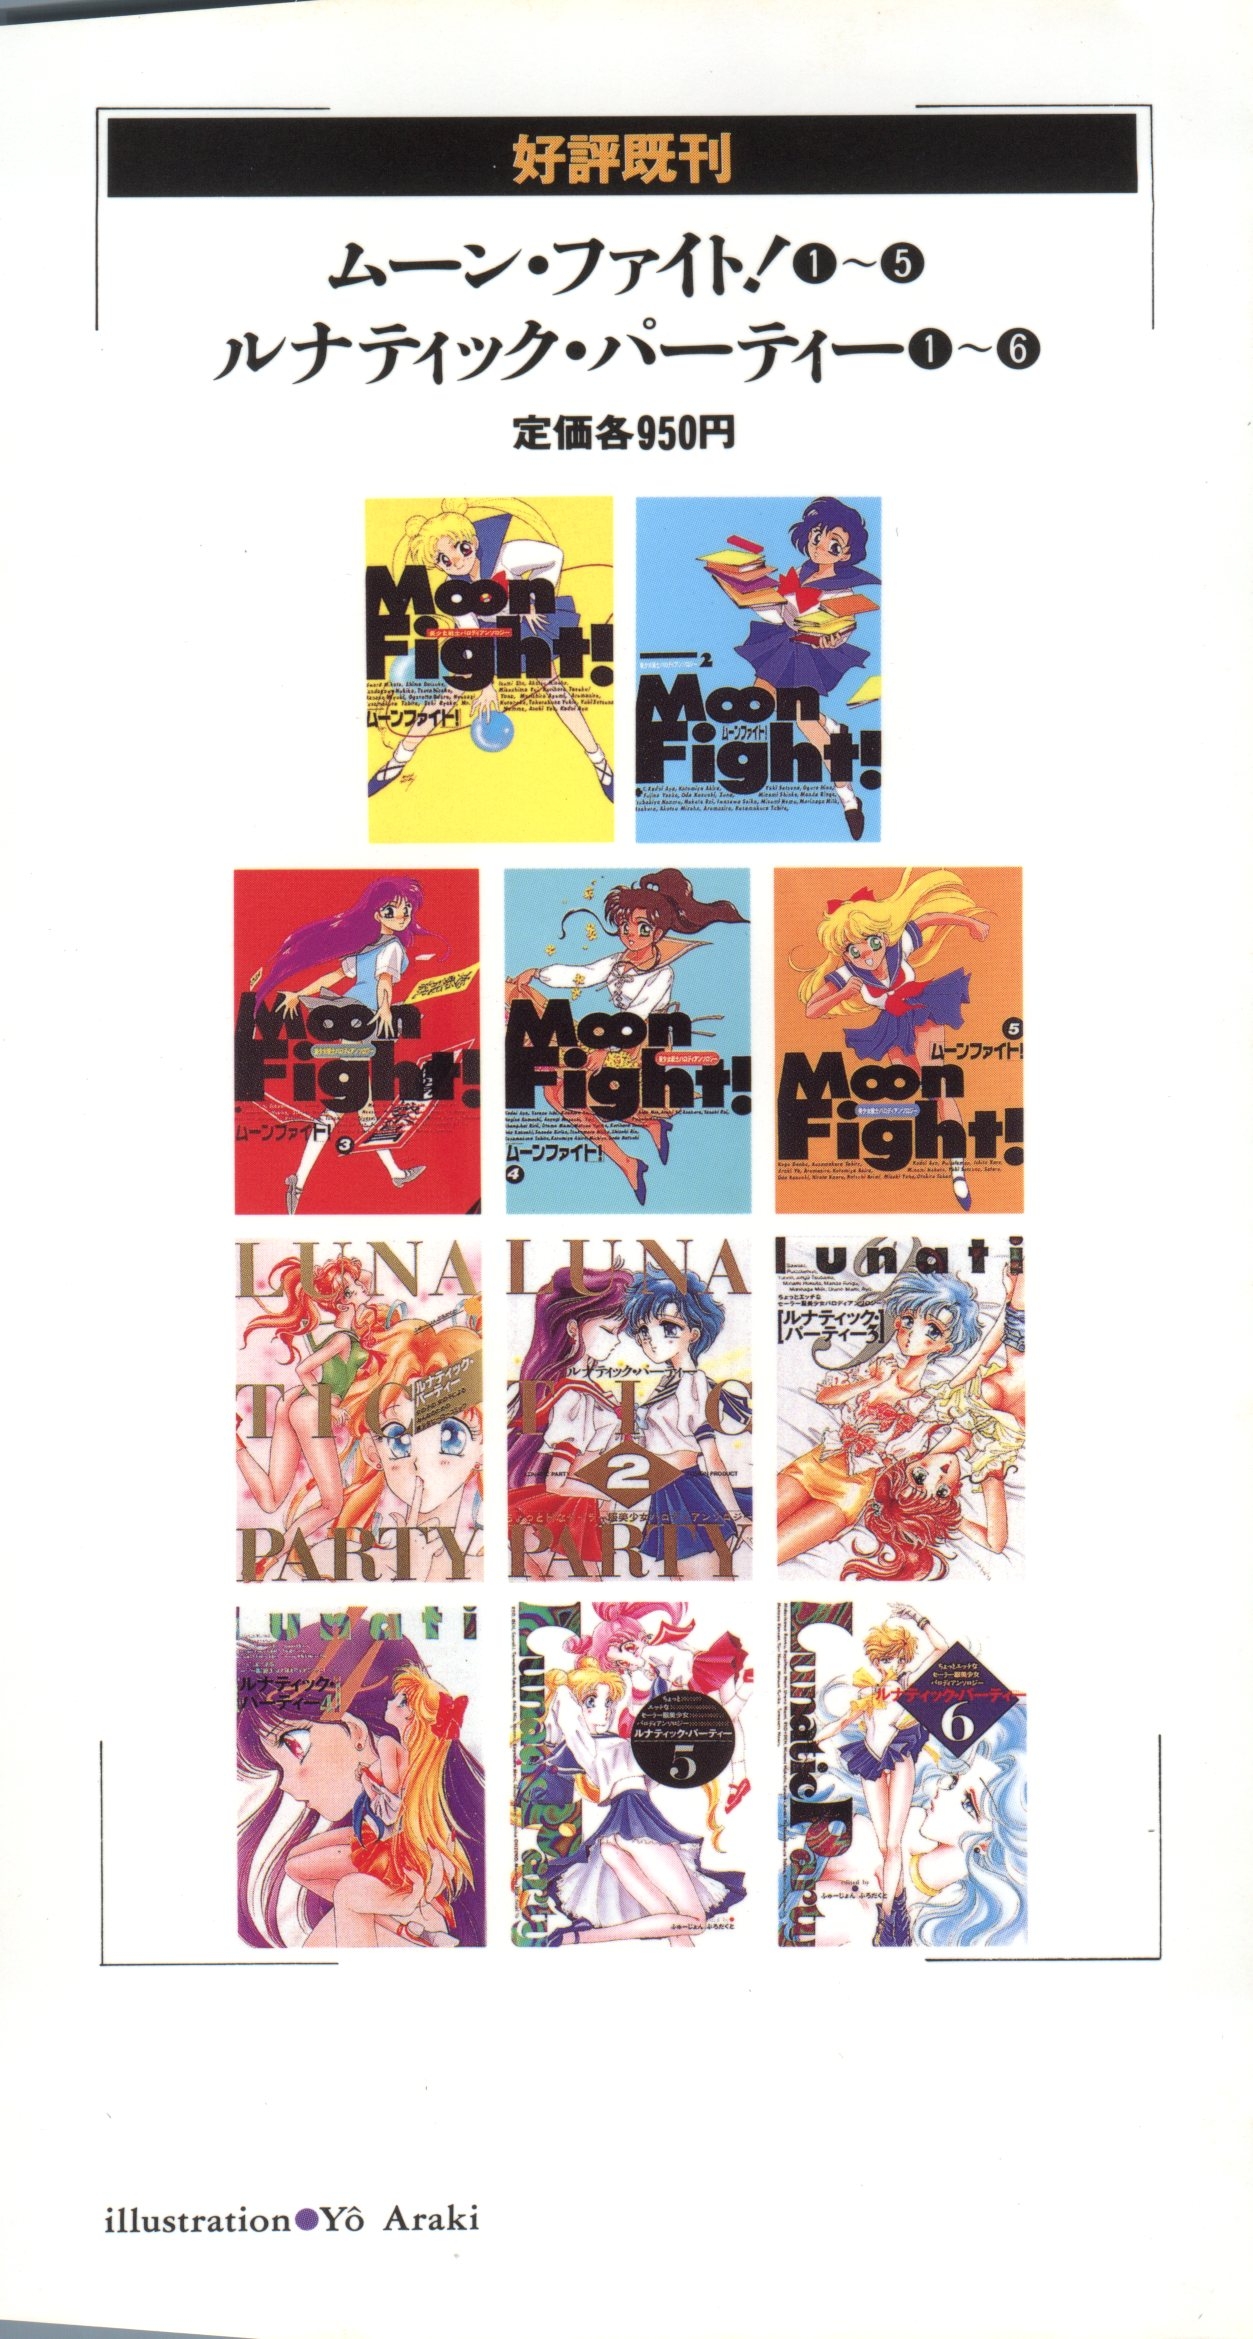 [Anthology] Lunatic Party 7 (Bishoujo Senshi Sailor Moon) 1